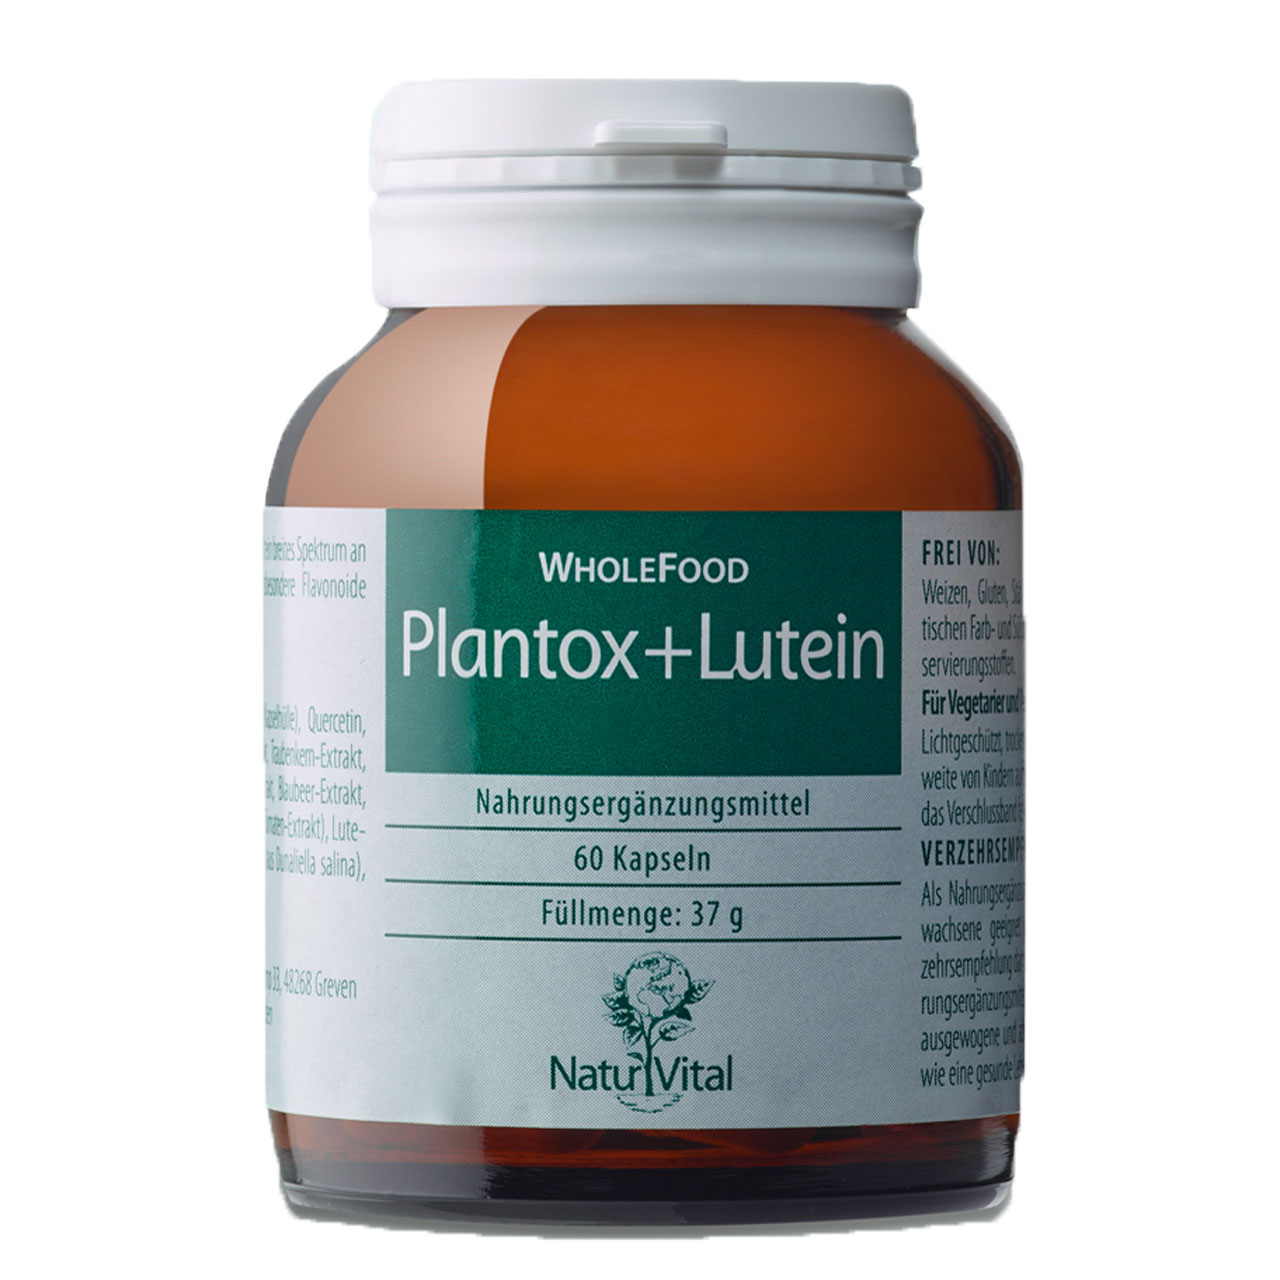 Plantox plus Lutein von Natur Vital beinhaltet 60 Kapseln